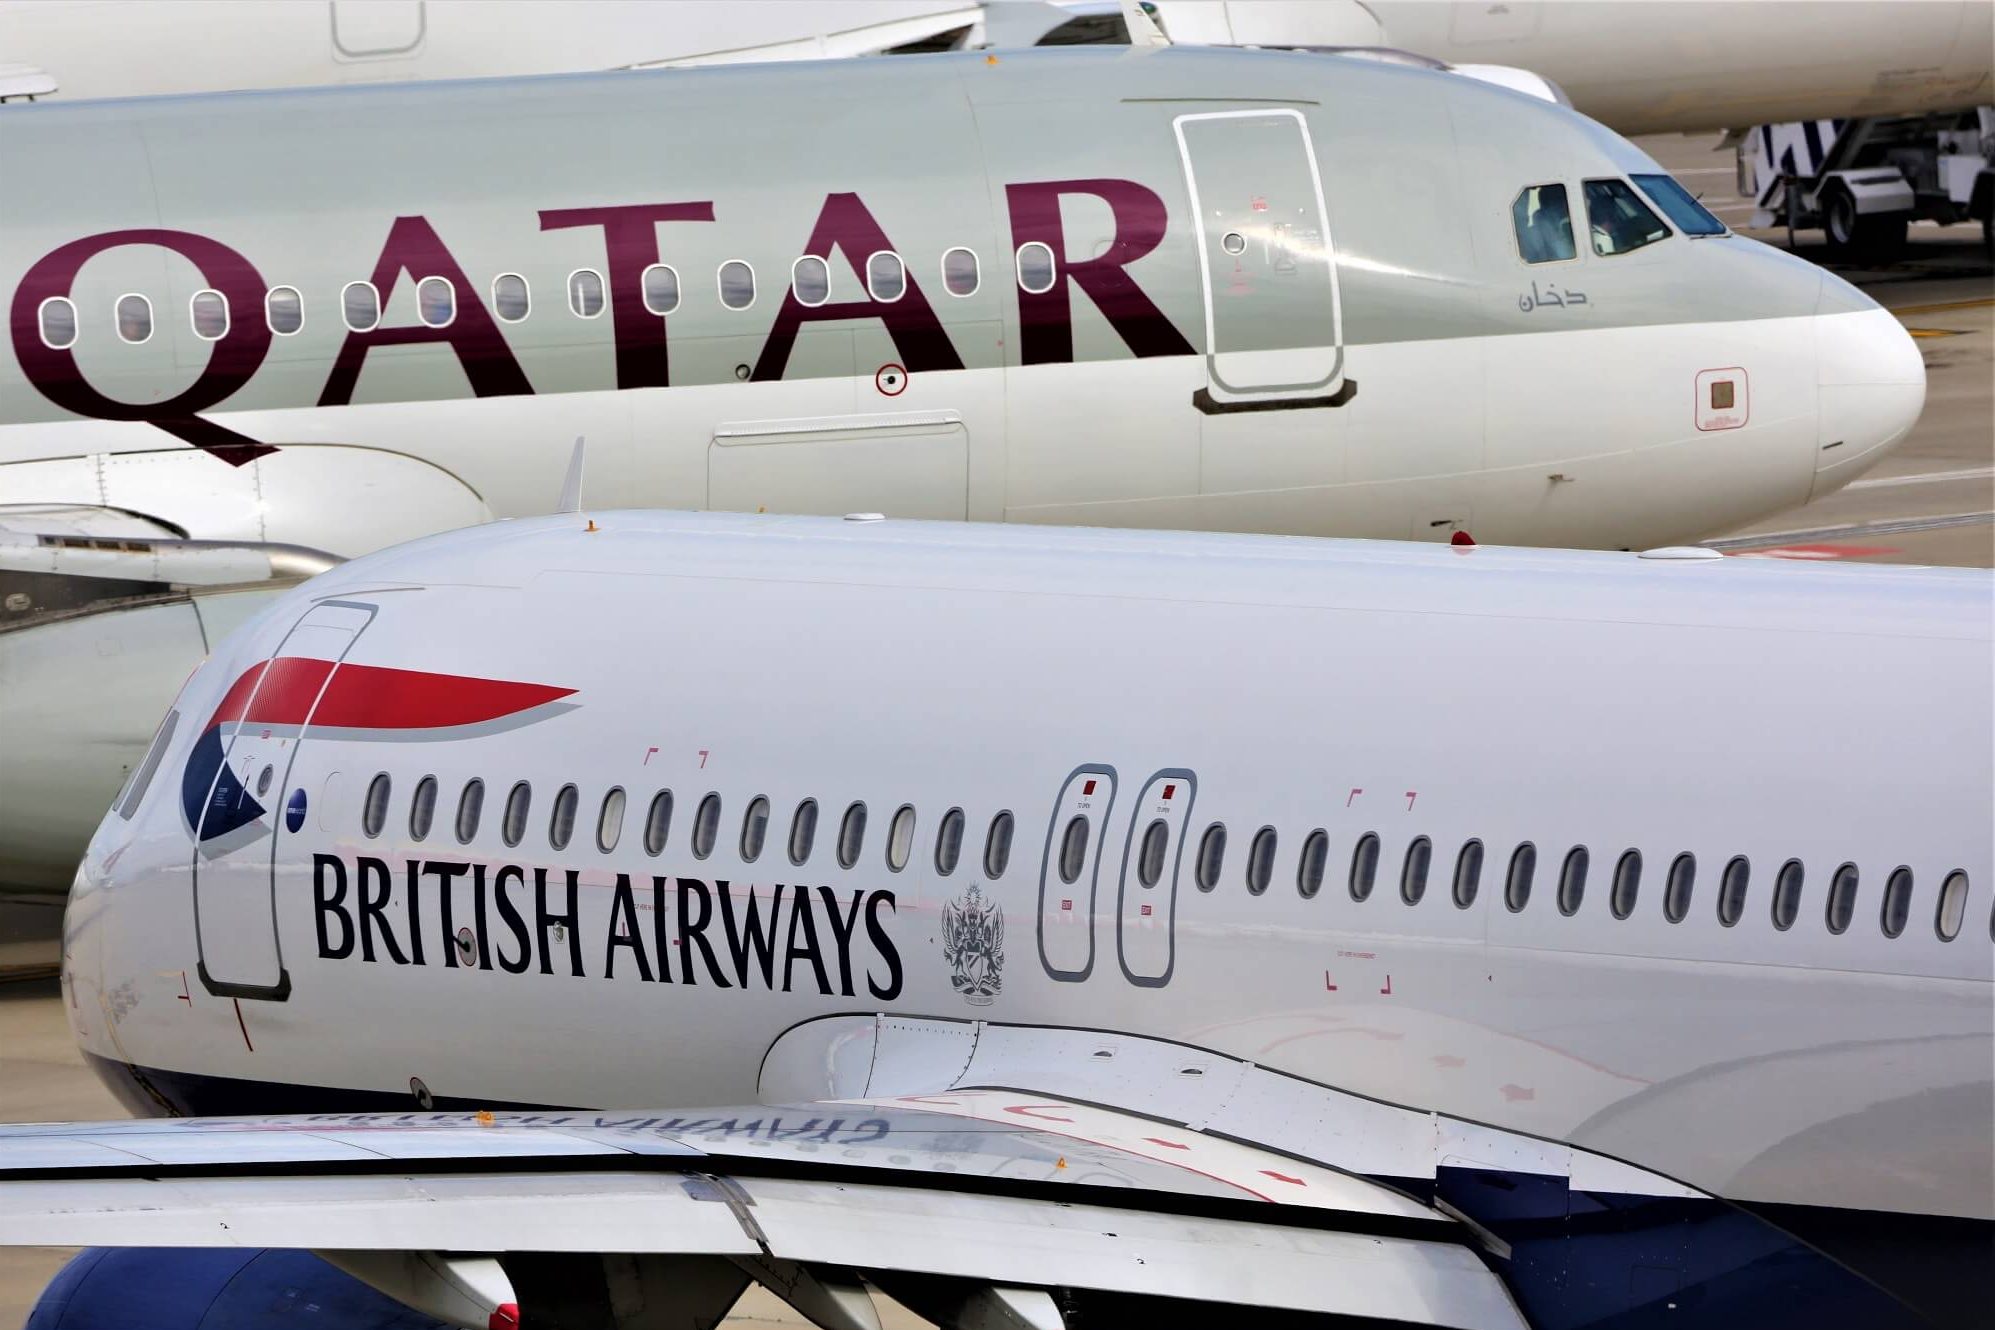 british airways avios travel rewards programme